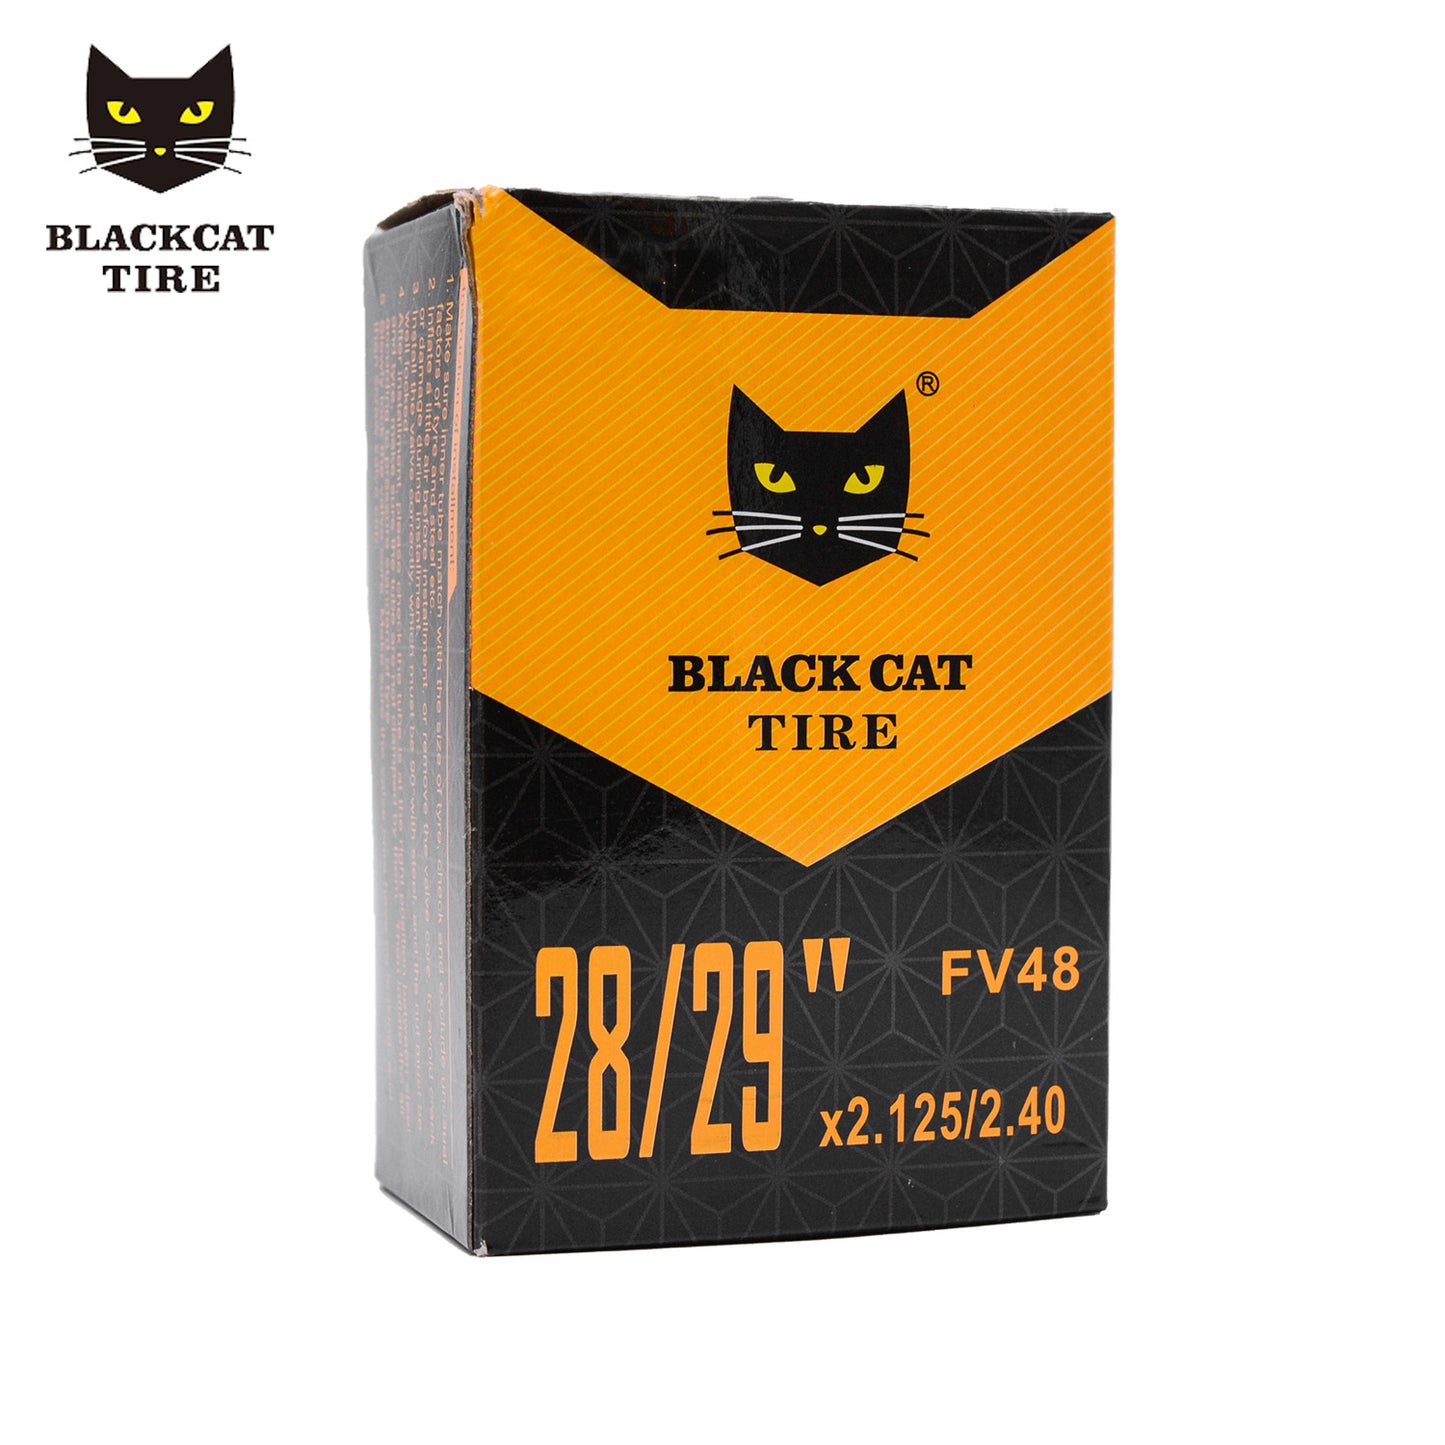 Black Cat Inner Tube 29x2.125-2.40 48mm Valve